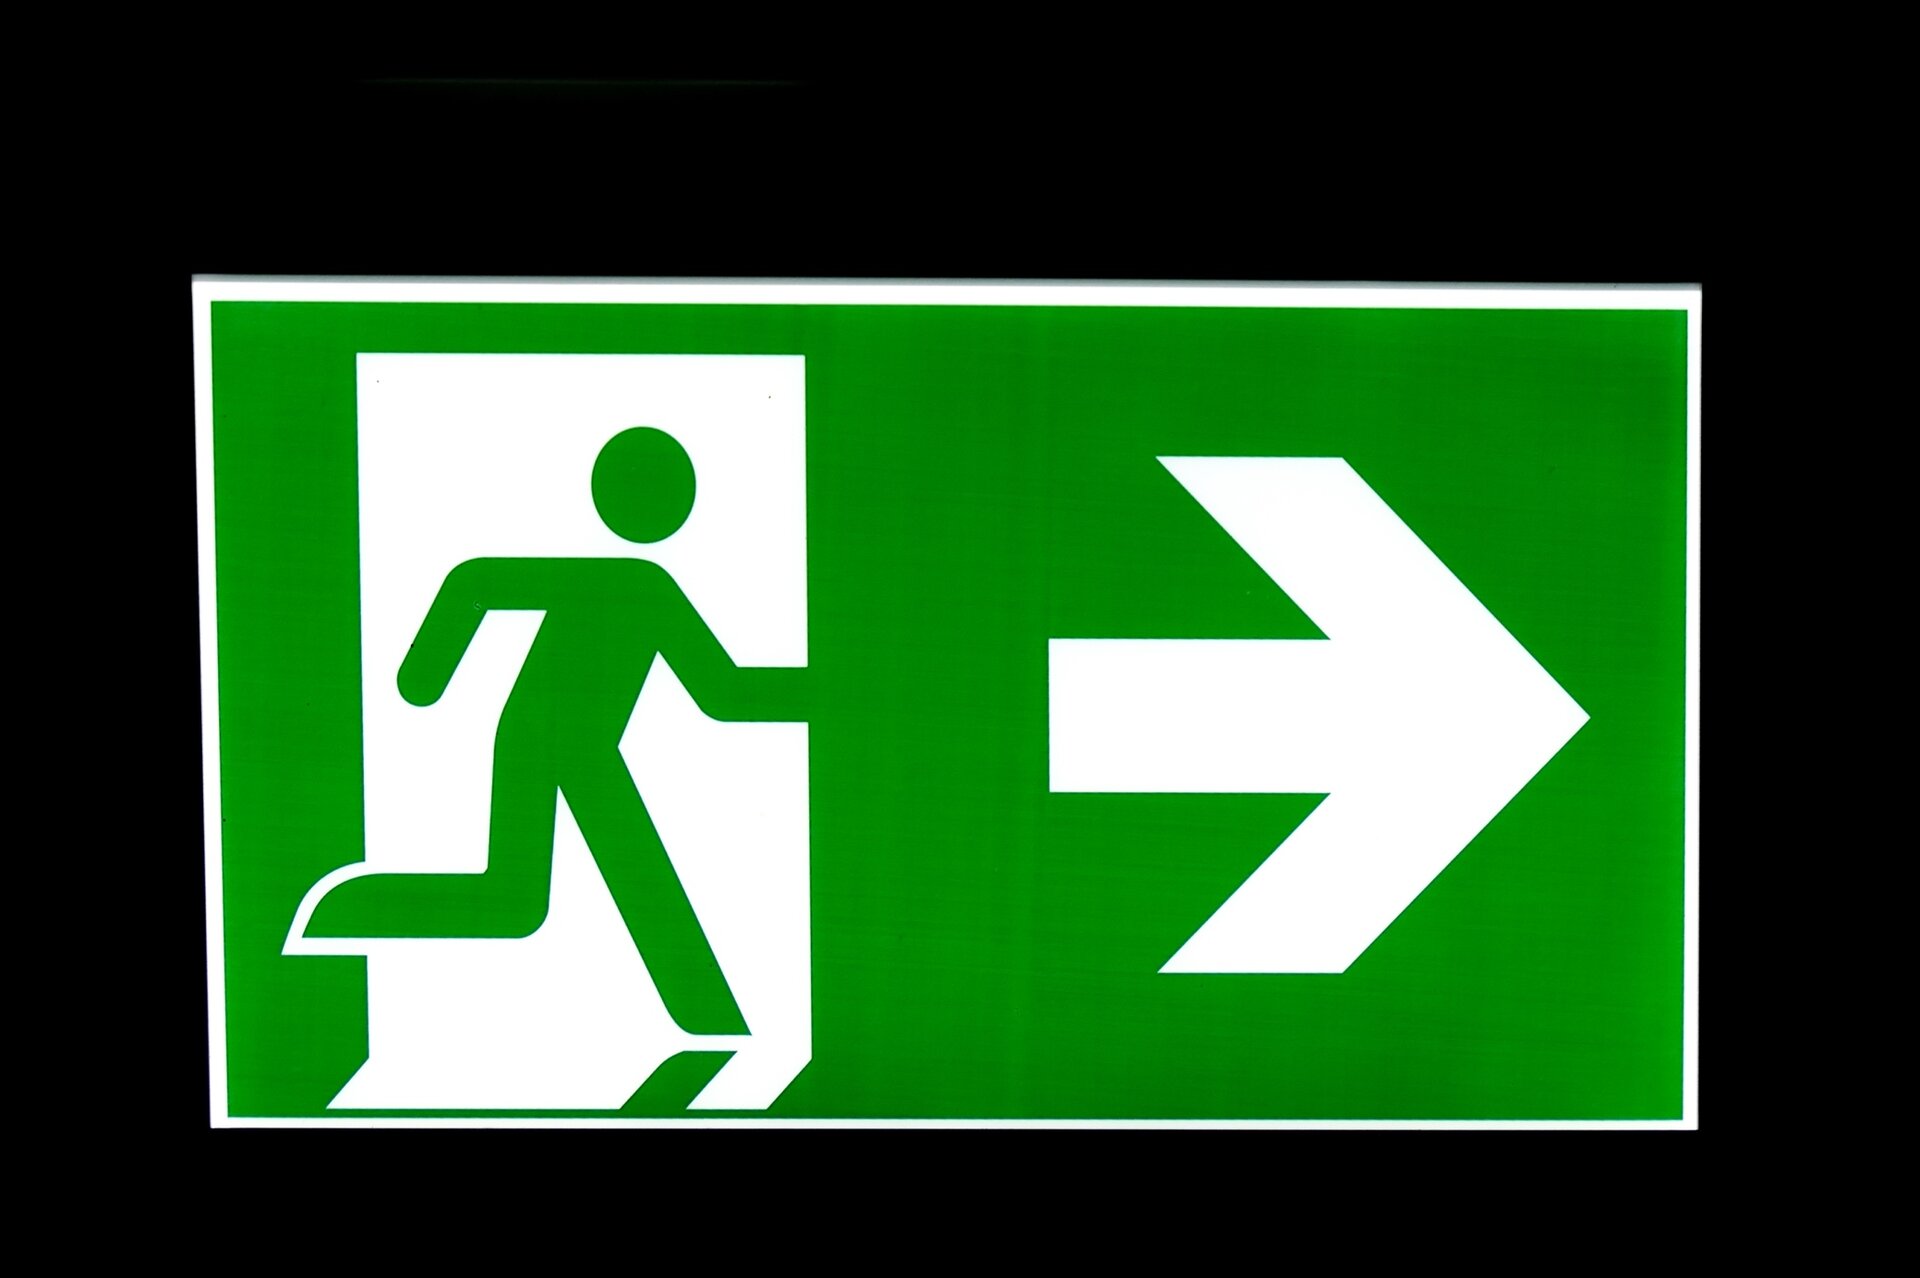 Zdjęcie przedstawia tabliczkę symbolizującą wyjście ewakuacyjne. Jest to zielona prostokątna tabliczka z białą obwódką. Po lewej stronie jest piktogram zielonego człowieka wybiegającego przez białe drzwi. Po prawej stronie znajduje się biała strzałka w prawo.